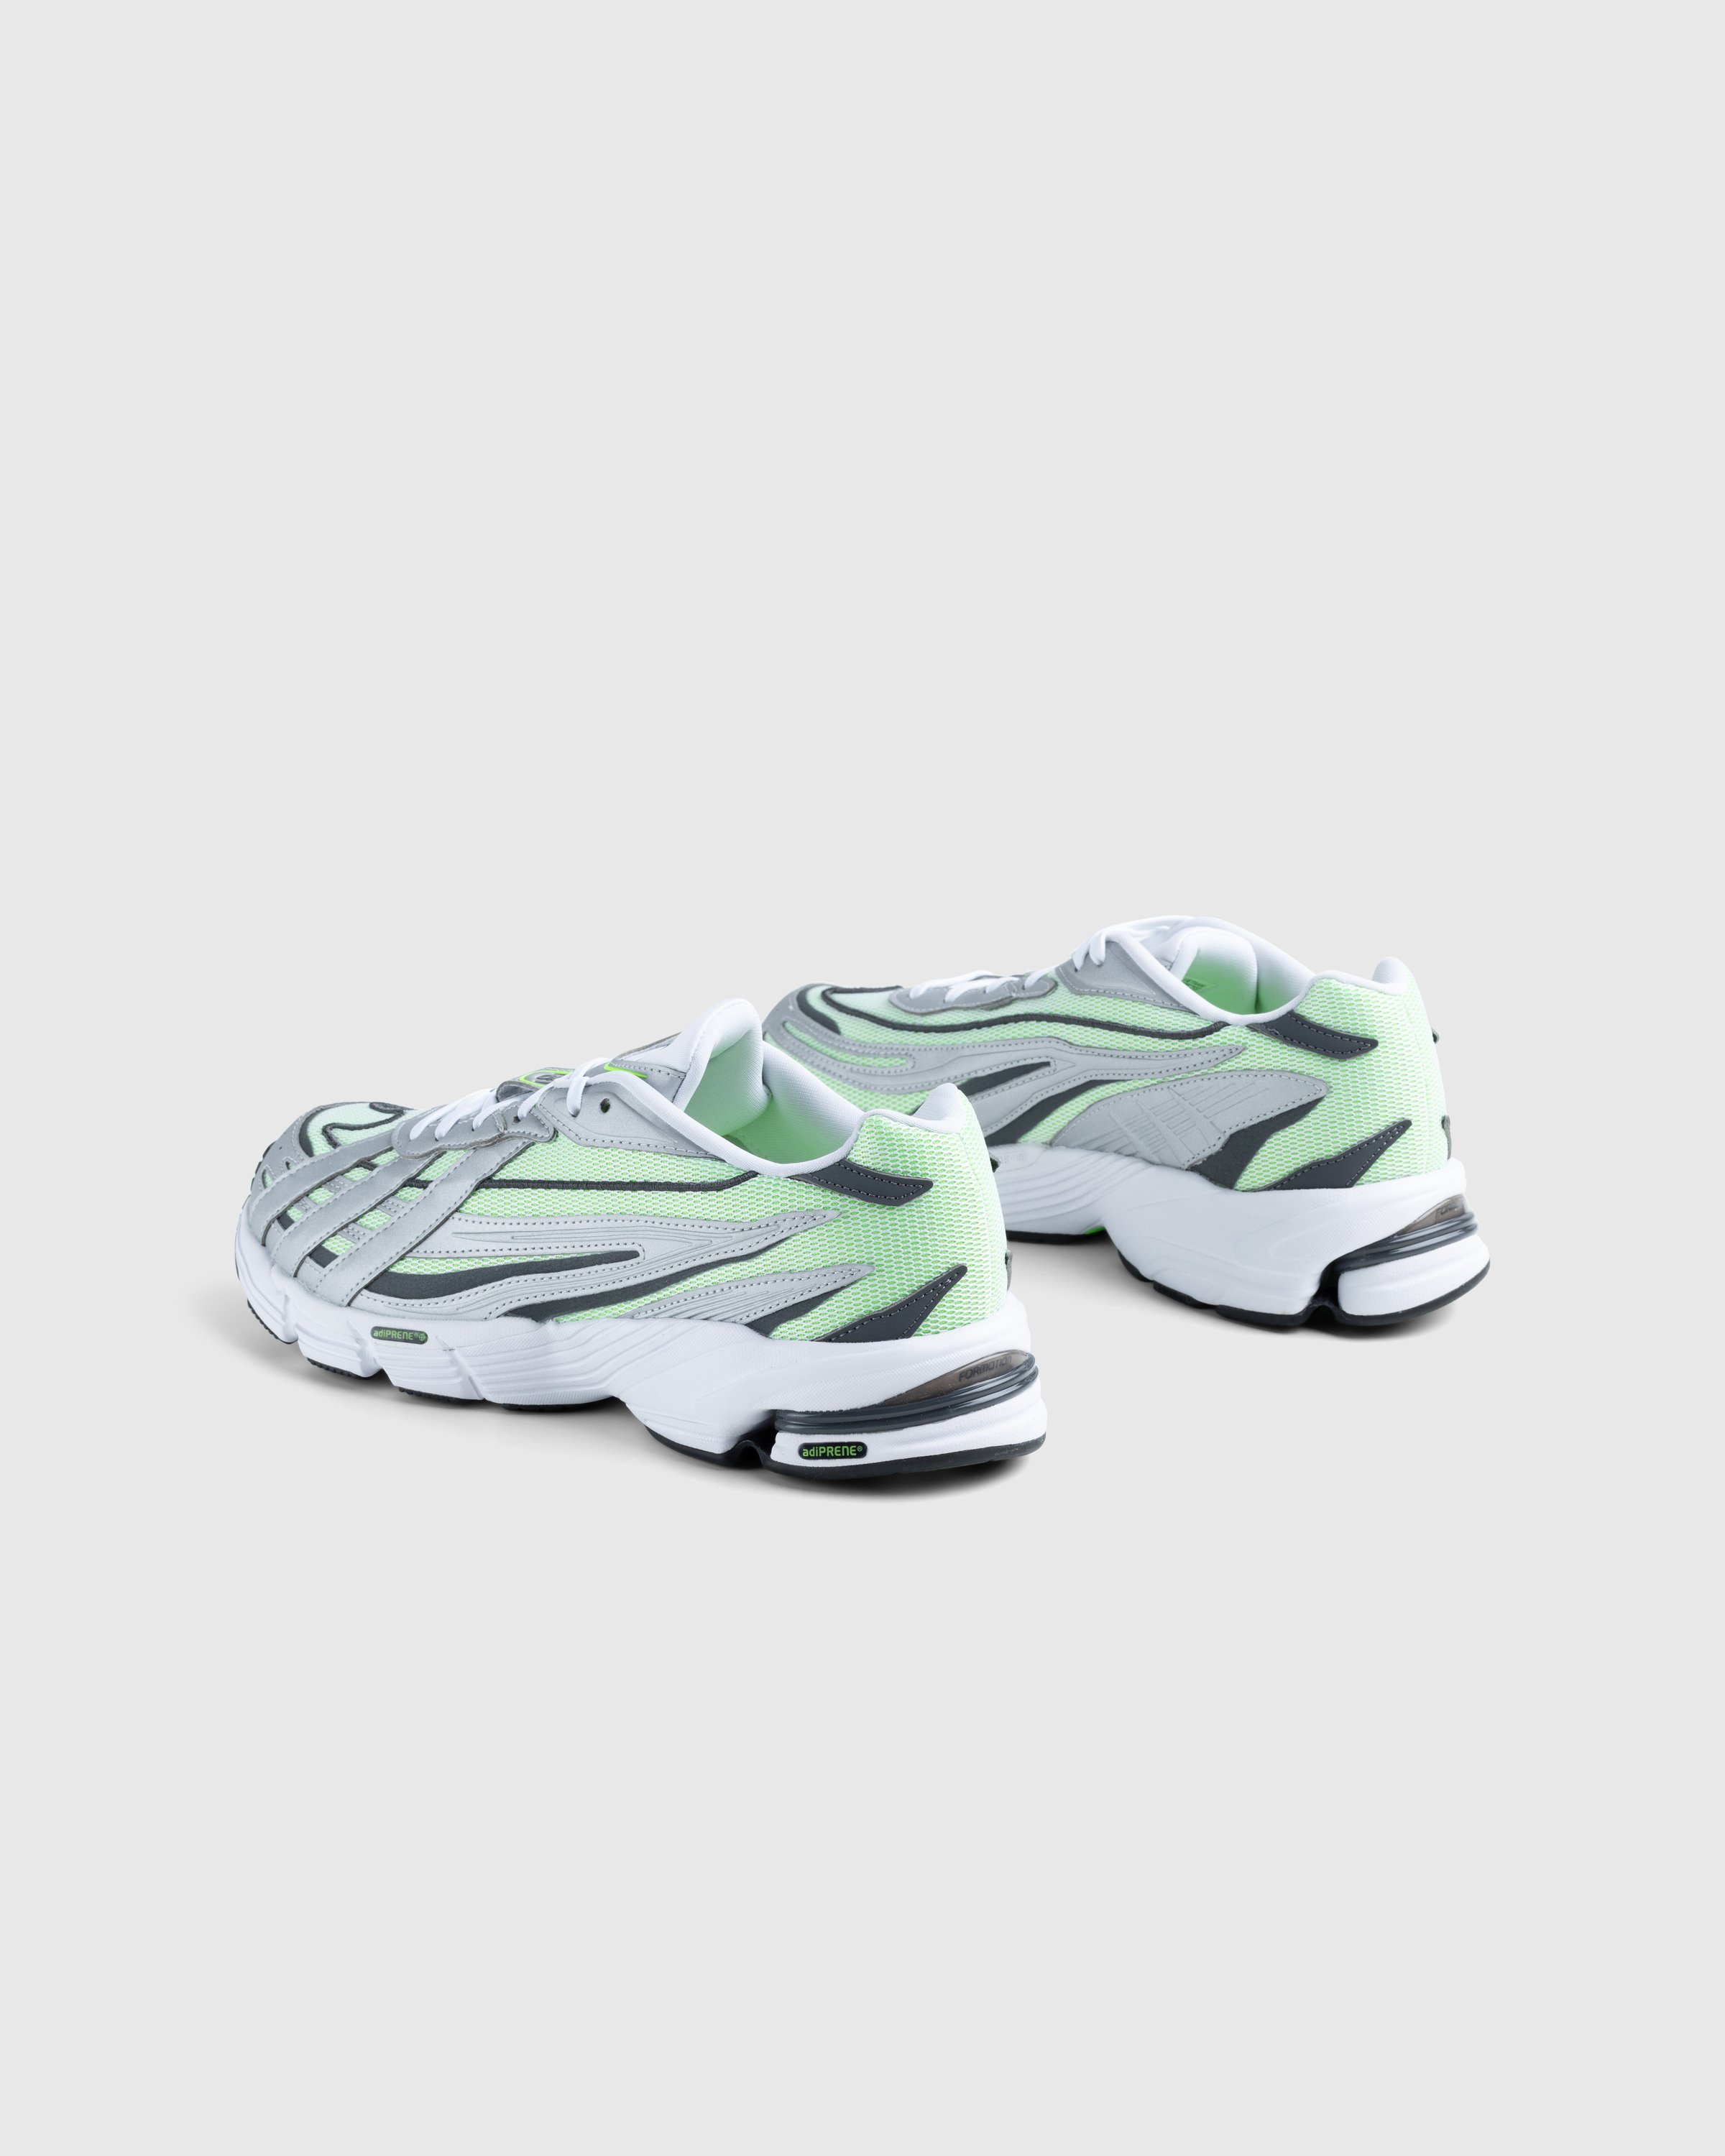 Adidas - Orketro White/Silver - Footwear - White - Image 4